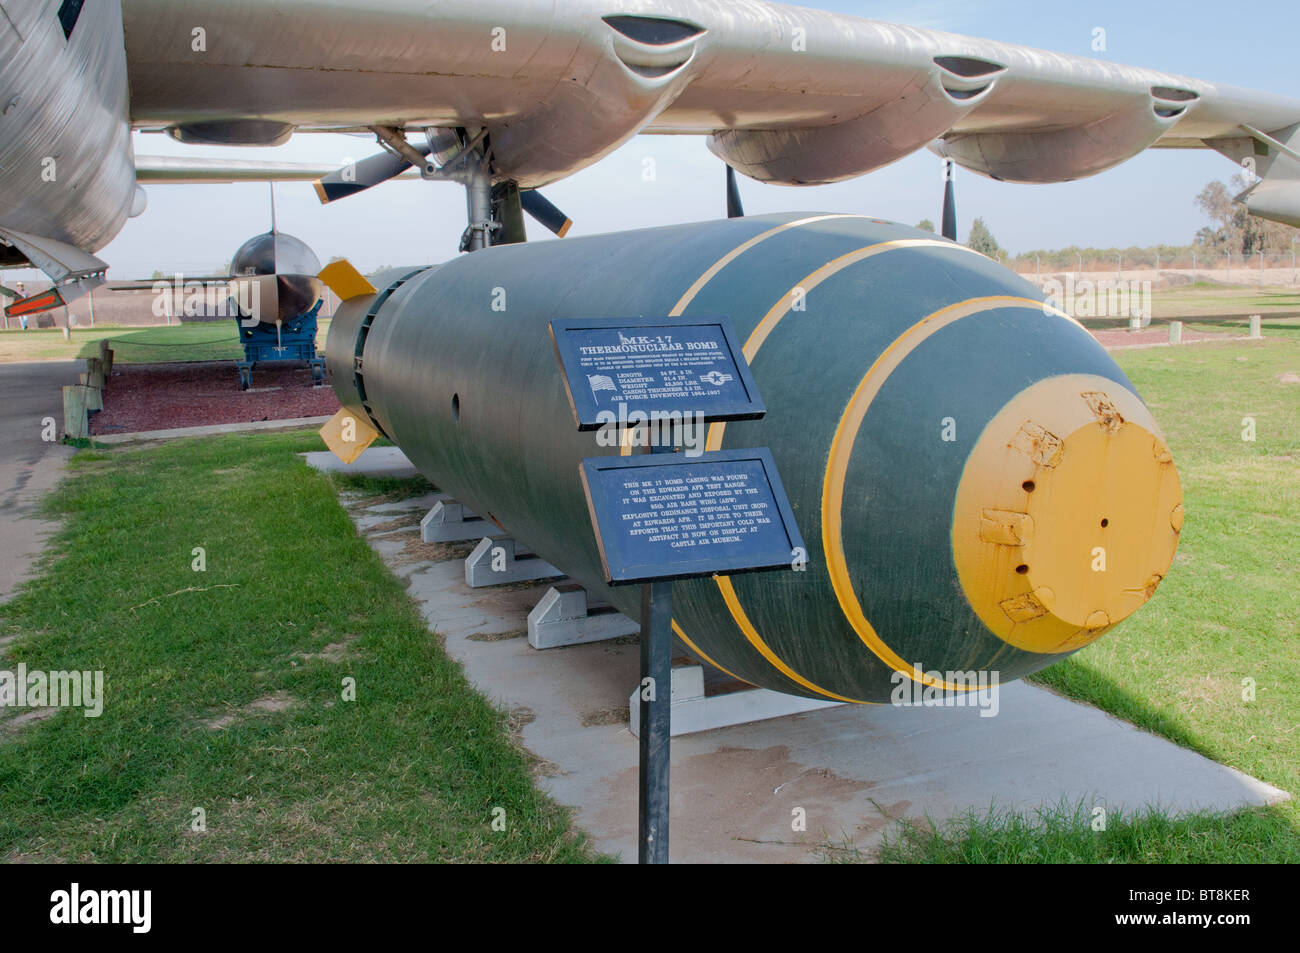 MK-17 bomba termonucleare in mostra al Castello di Air Museum, Merced California Foto Stock